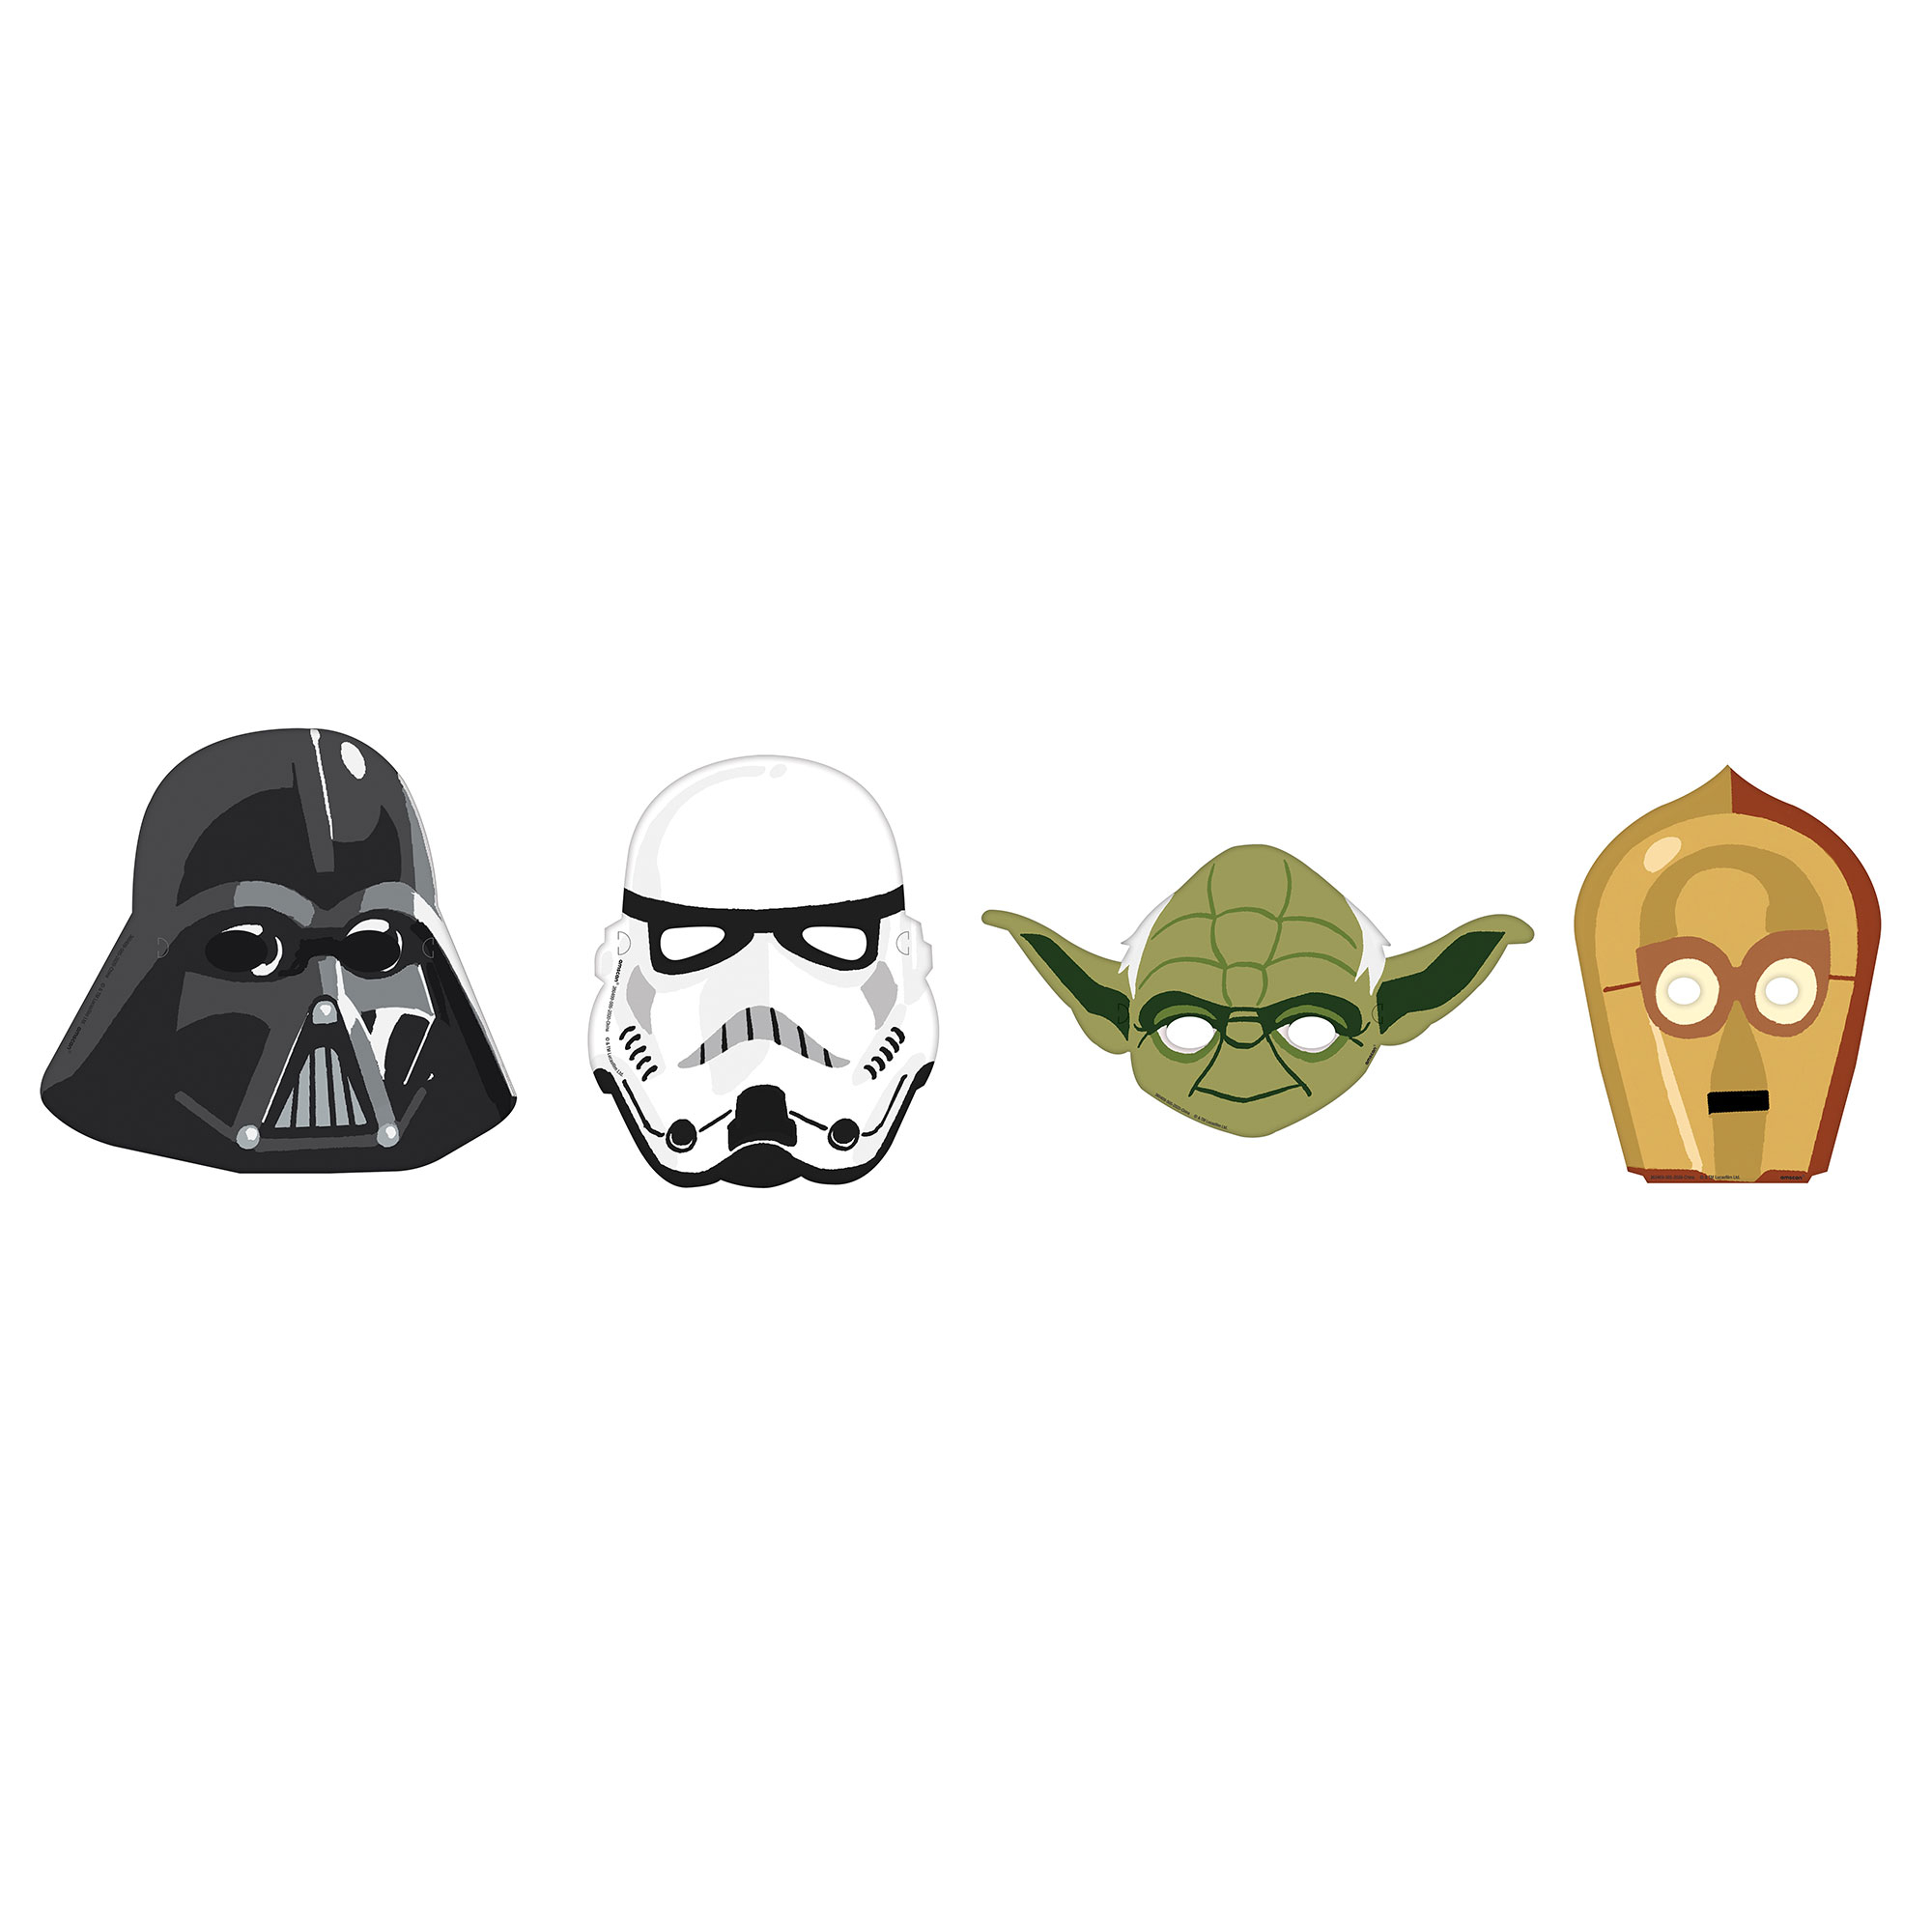 Star Wars Galaxy - Paper Masks